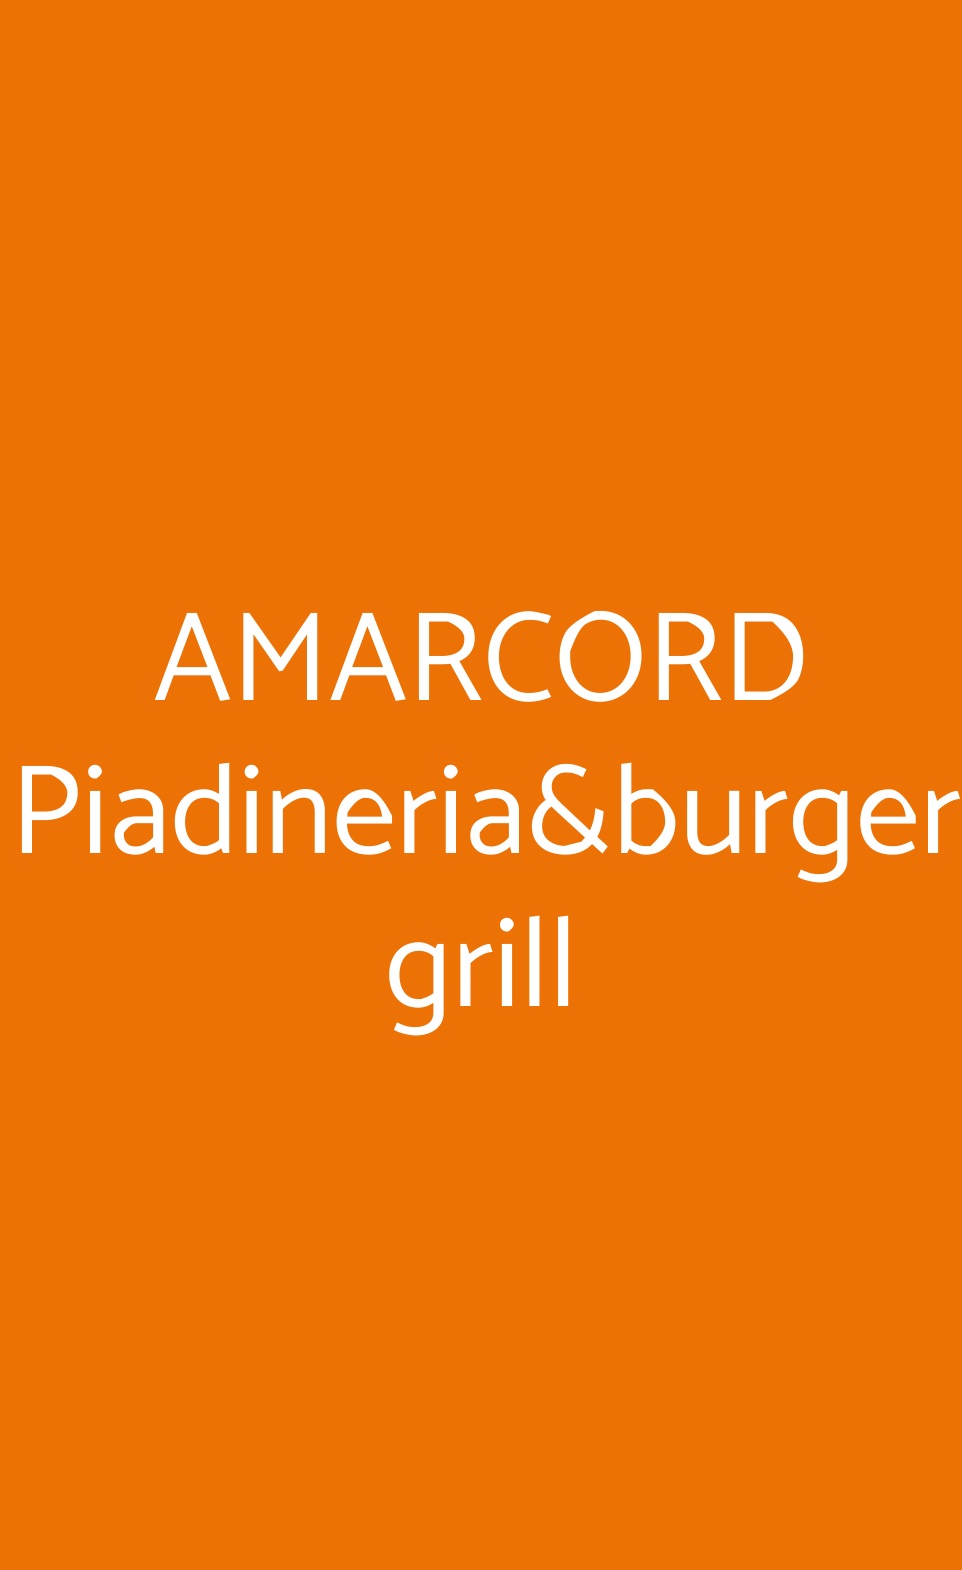 AMARCORD Piadineria&burger grill Busto Arsizio menù 1 pagina